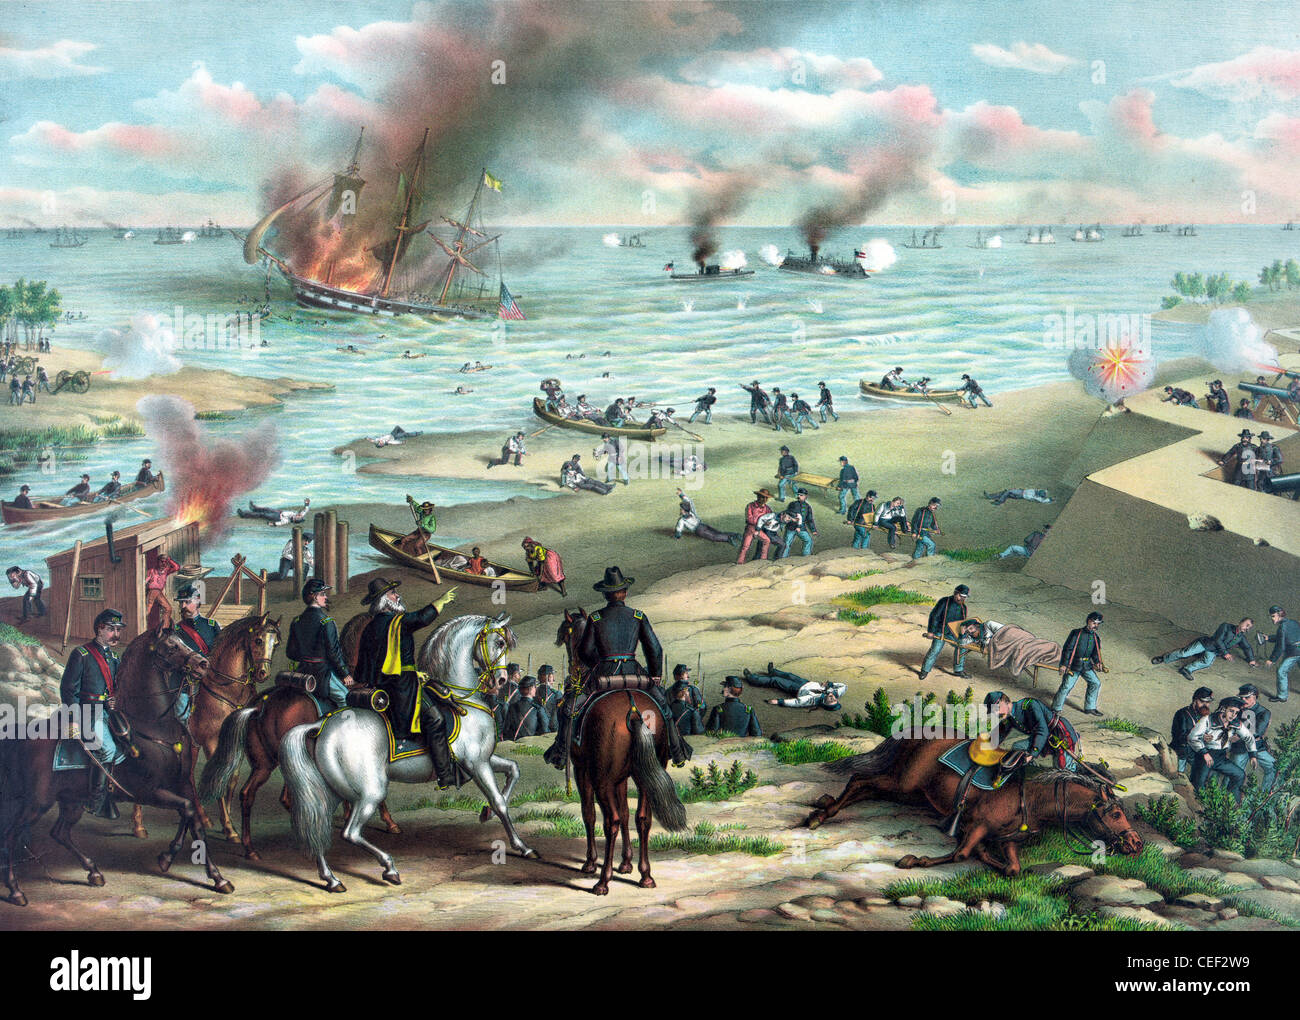 La bataille de Hampton Roads, bataille de la surveiller et Merrimack, bataille de cuirassés pendant la guerre civile américaine Banque D'Images